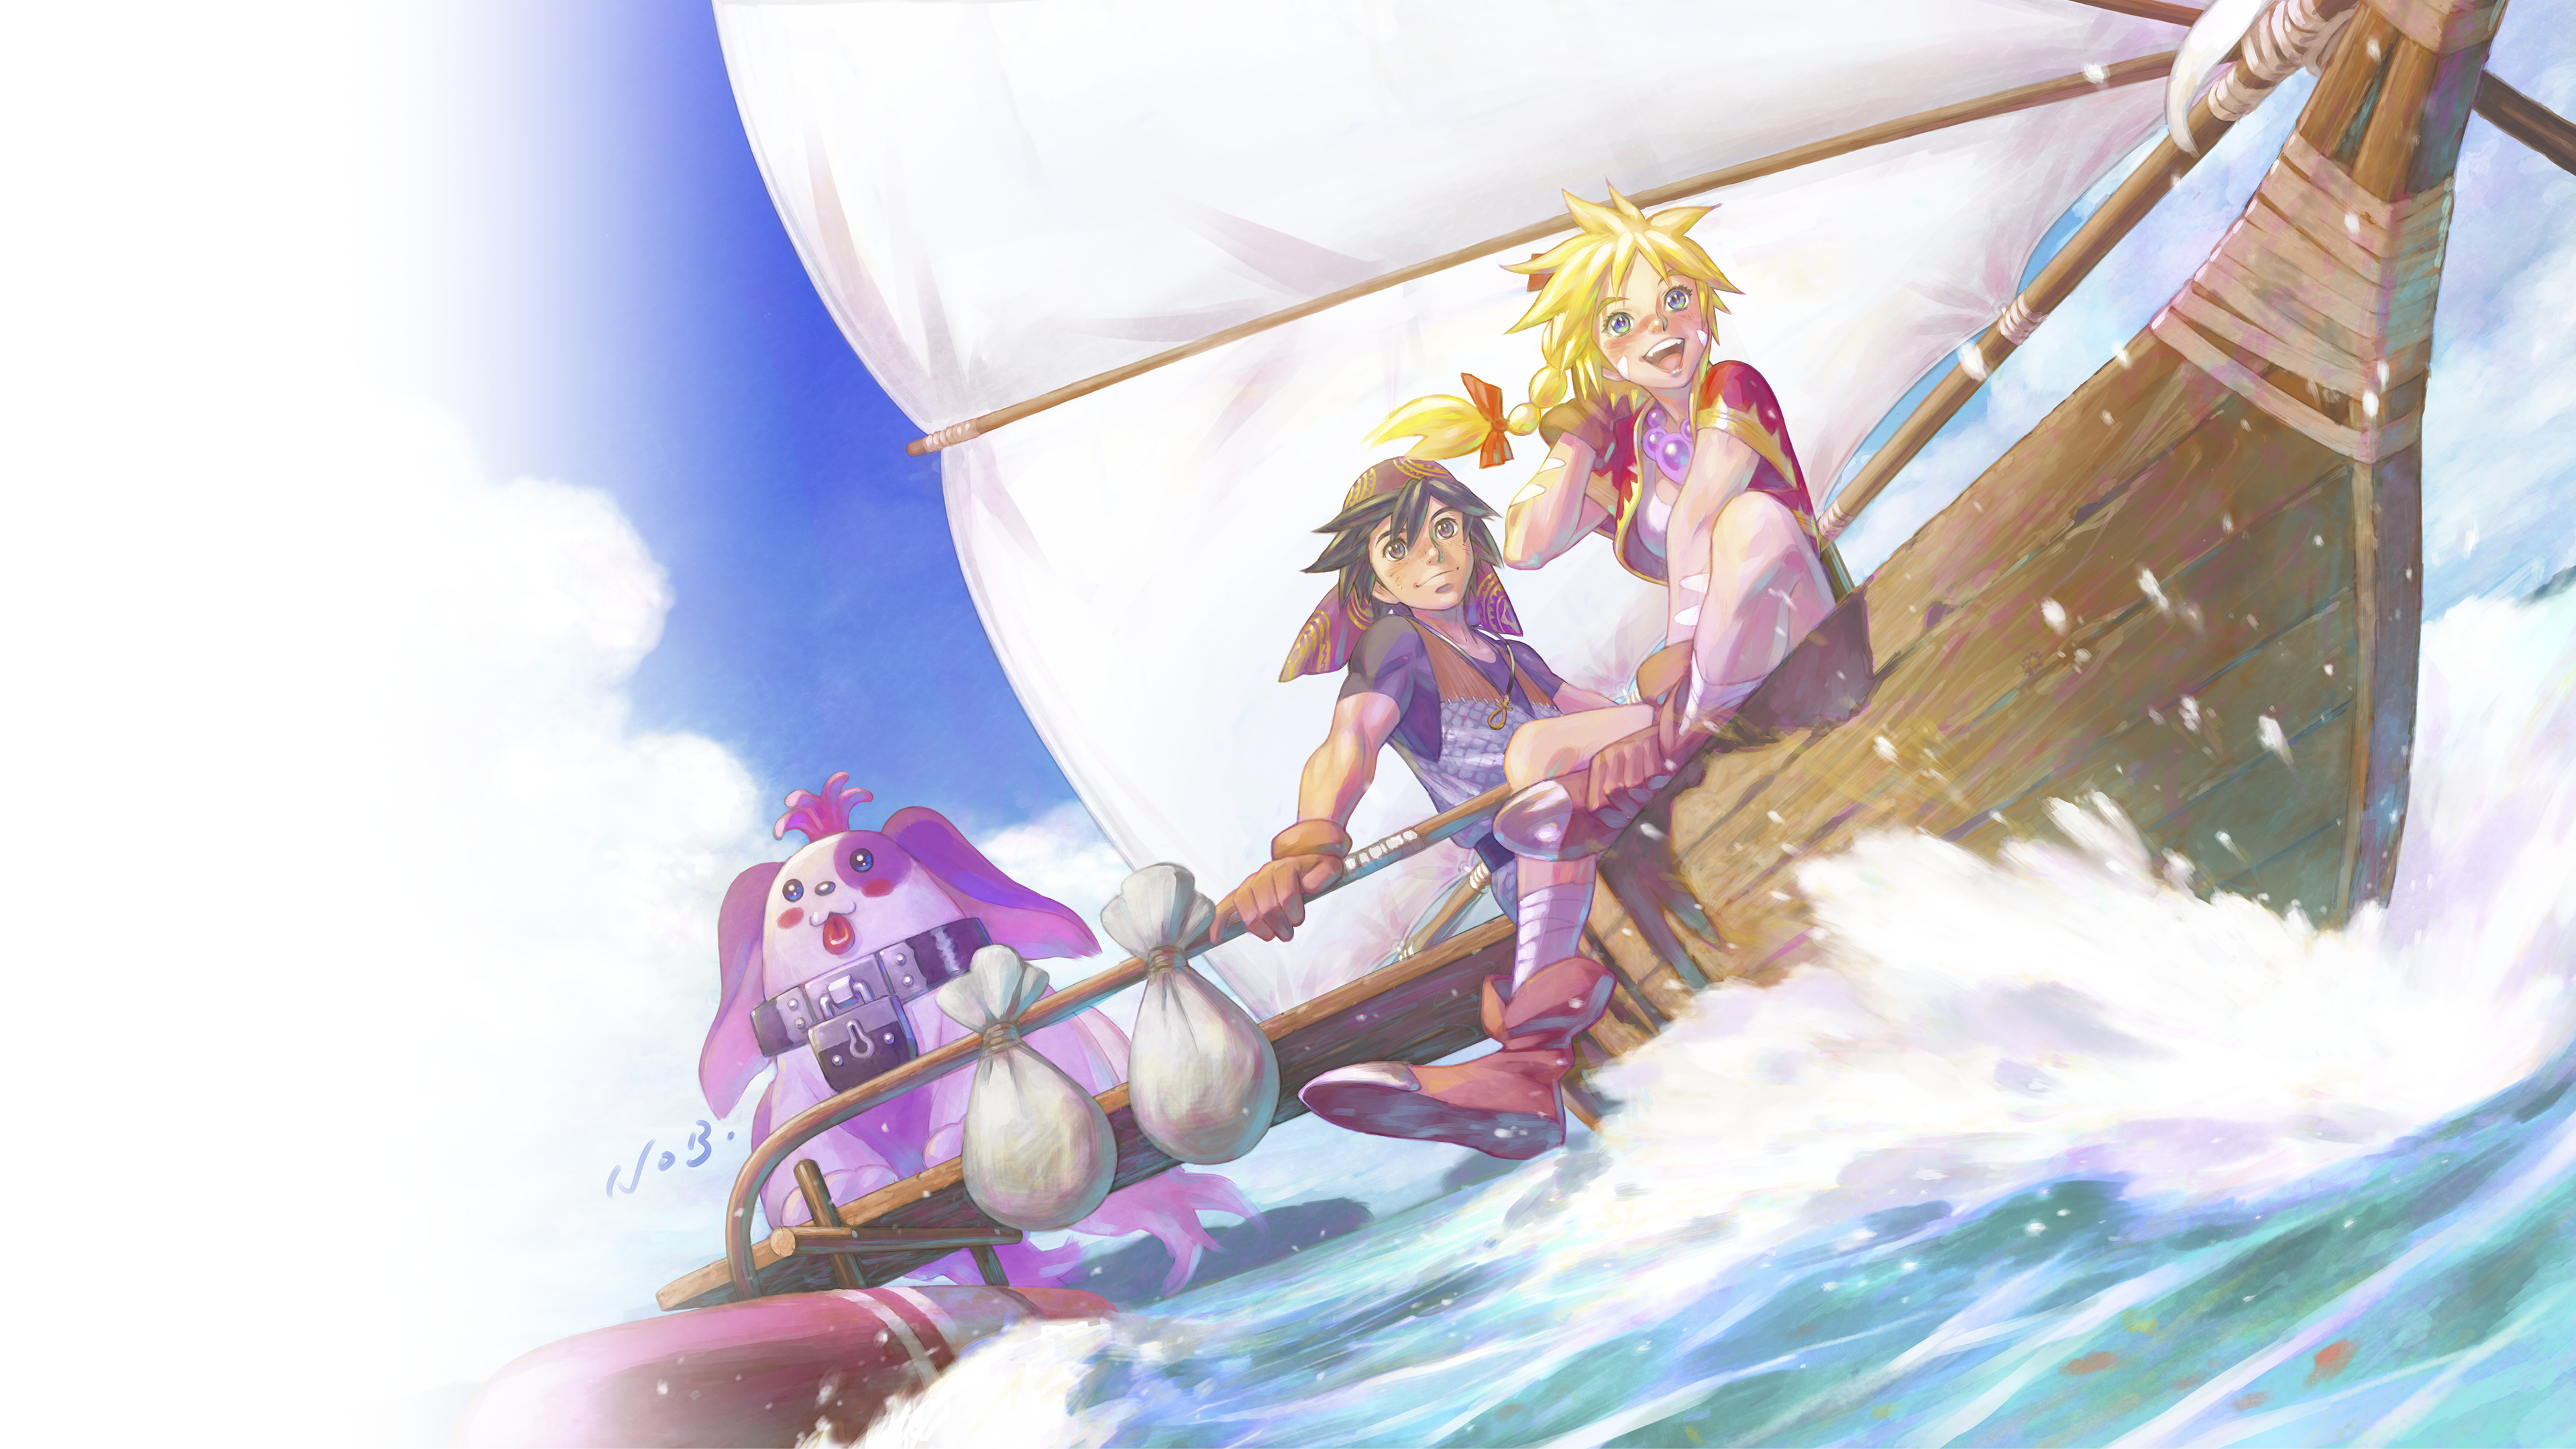 Heldengrafik von Chrono Cross: The Radical Dreamers Edition, die drei Charaktere auf einem Boot zeigt.